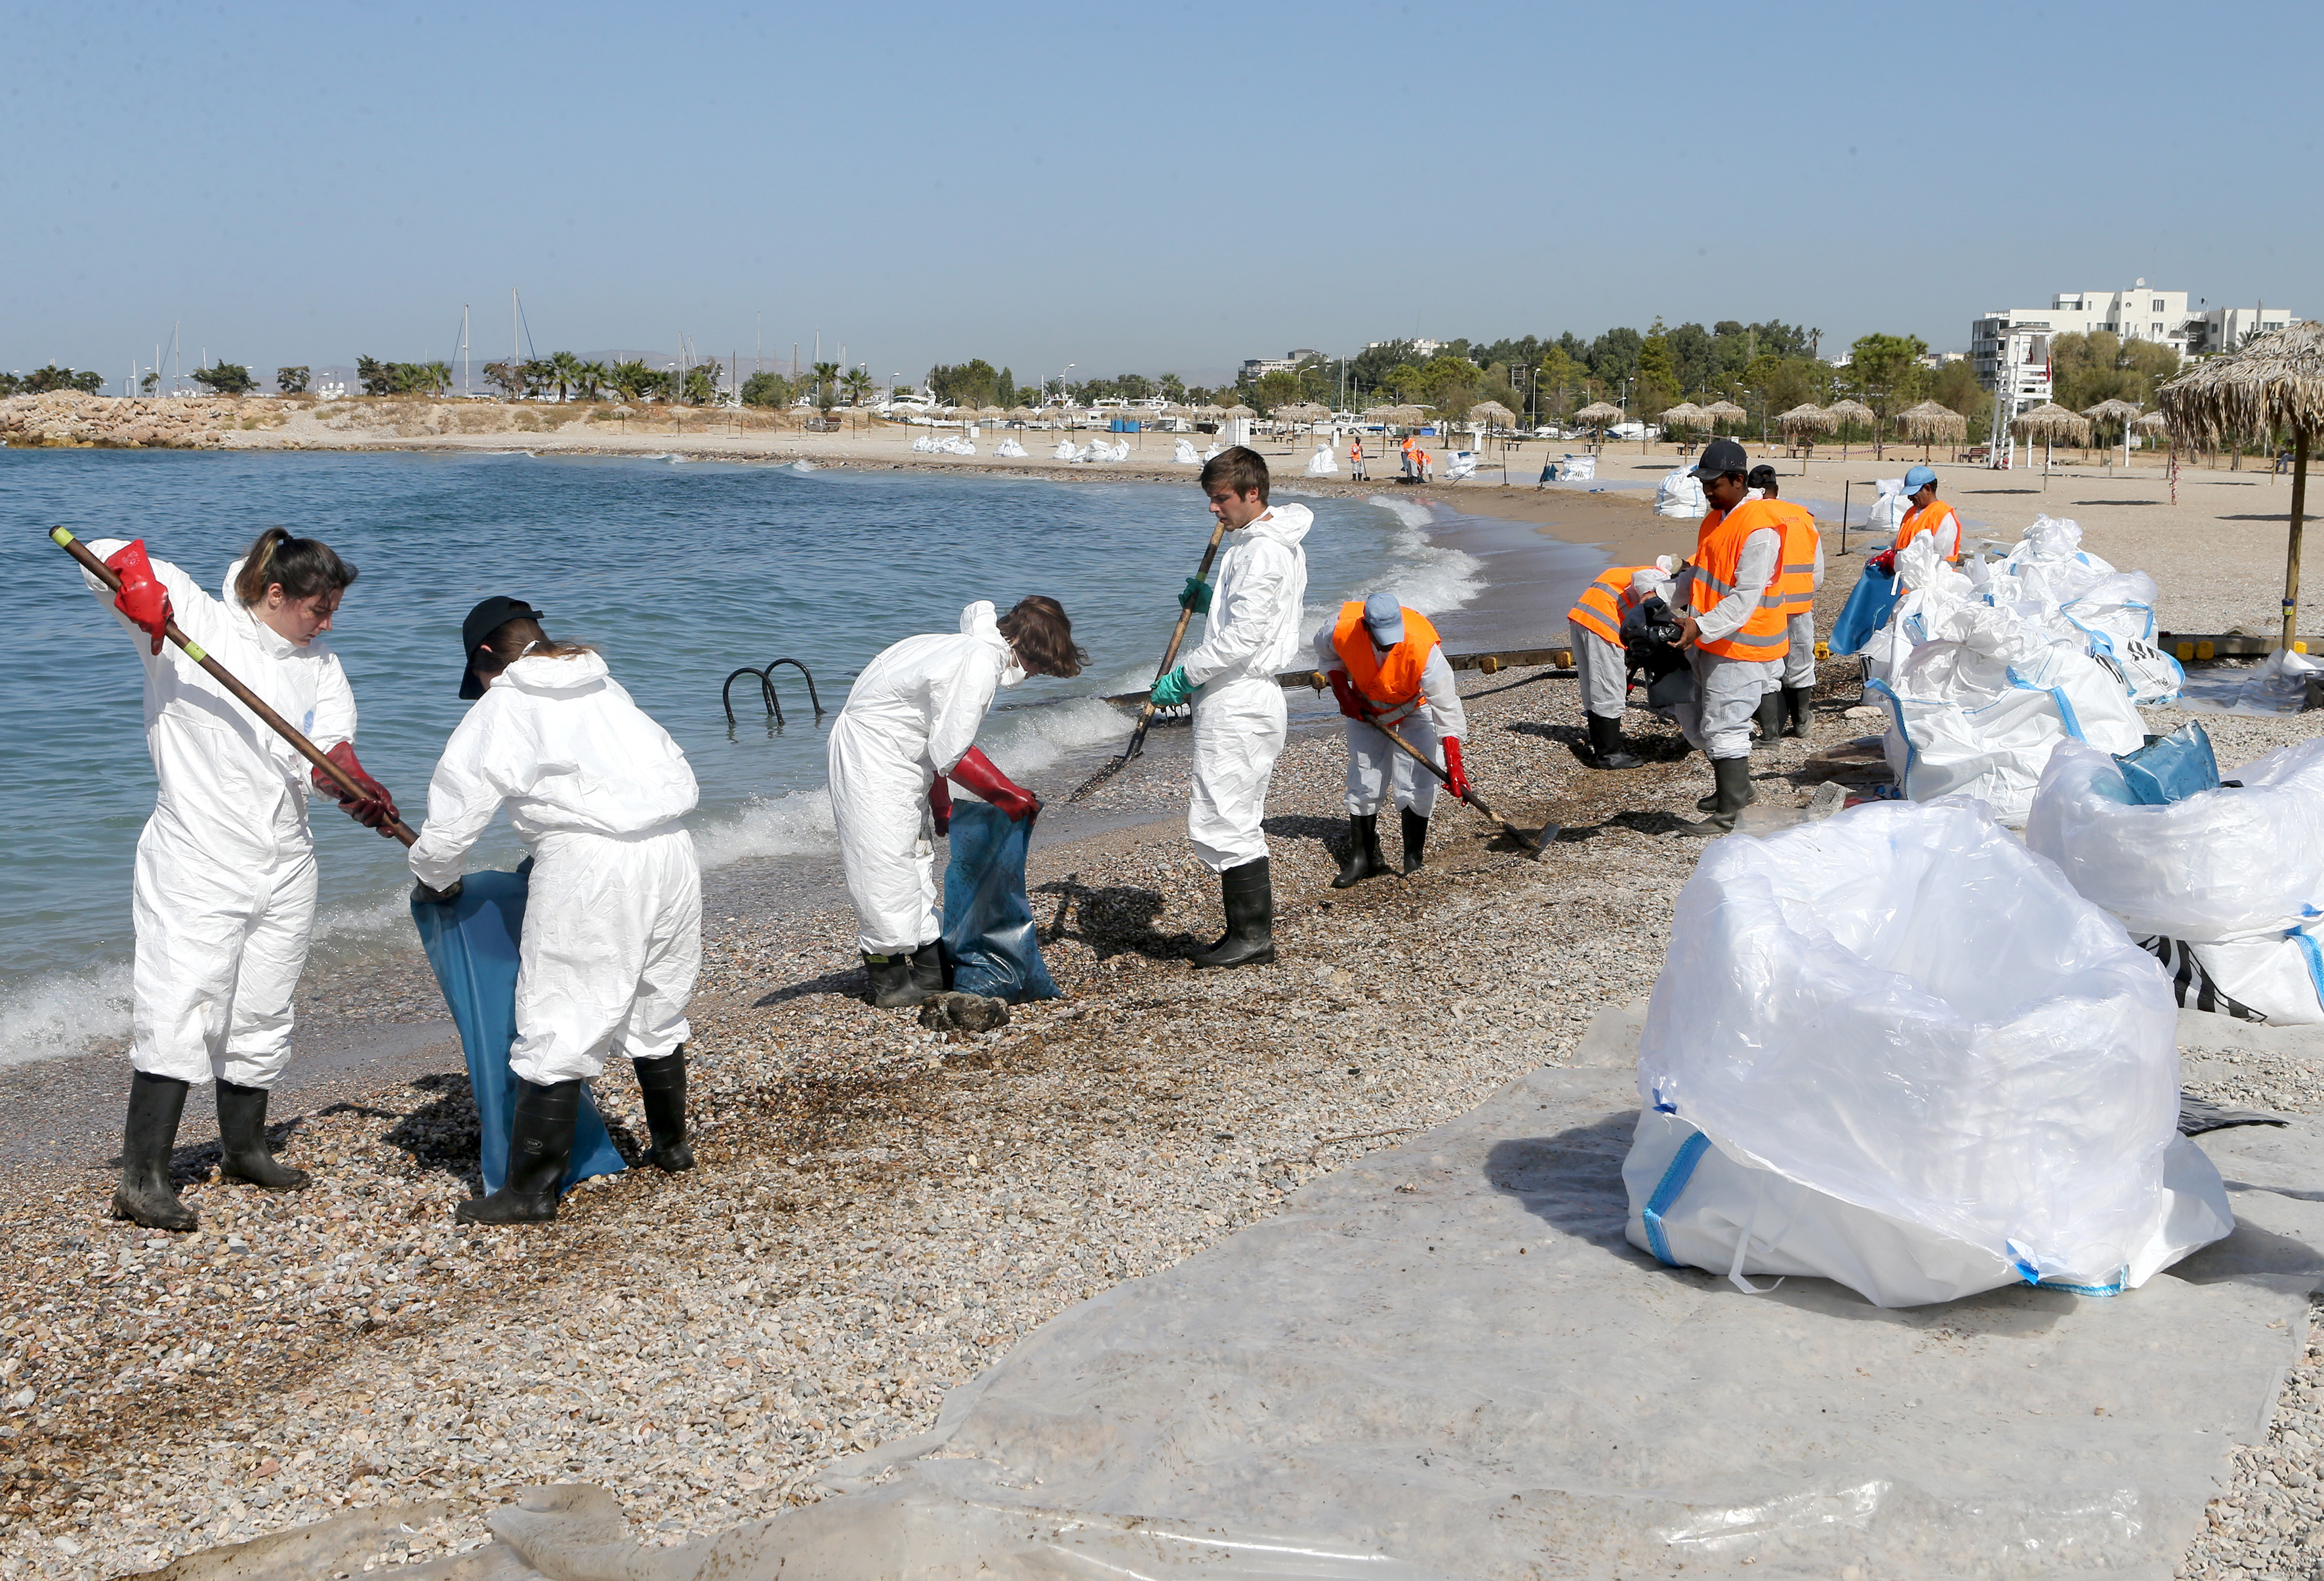 Σε εξέλιξη και το Σάββατο εργασίες απορρύπανσης στις ακτές, σύμφωνα με το Λιμενικό